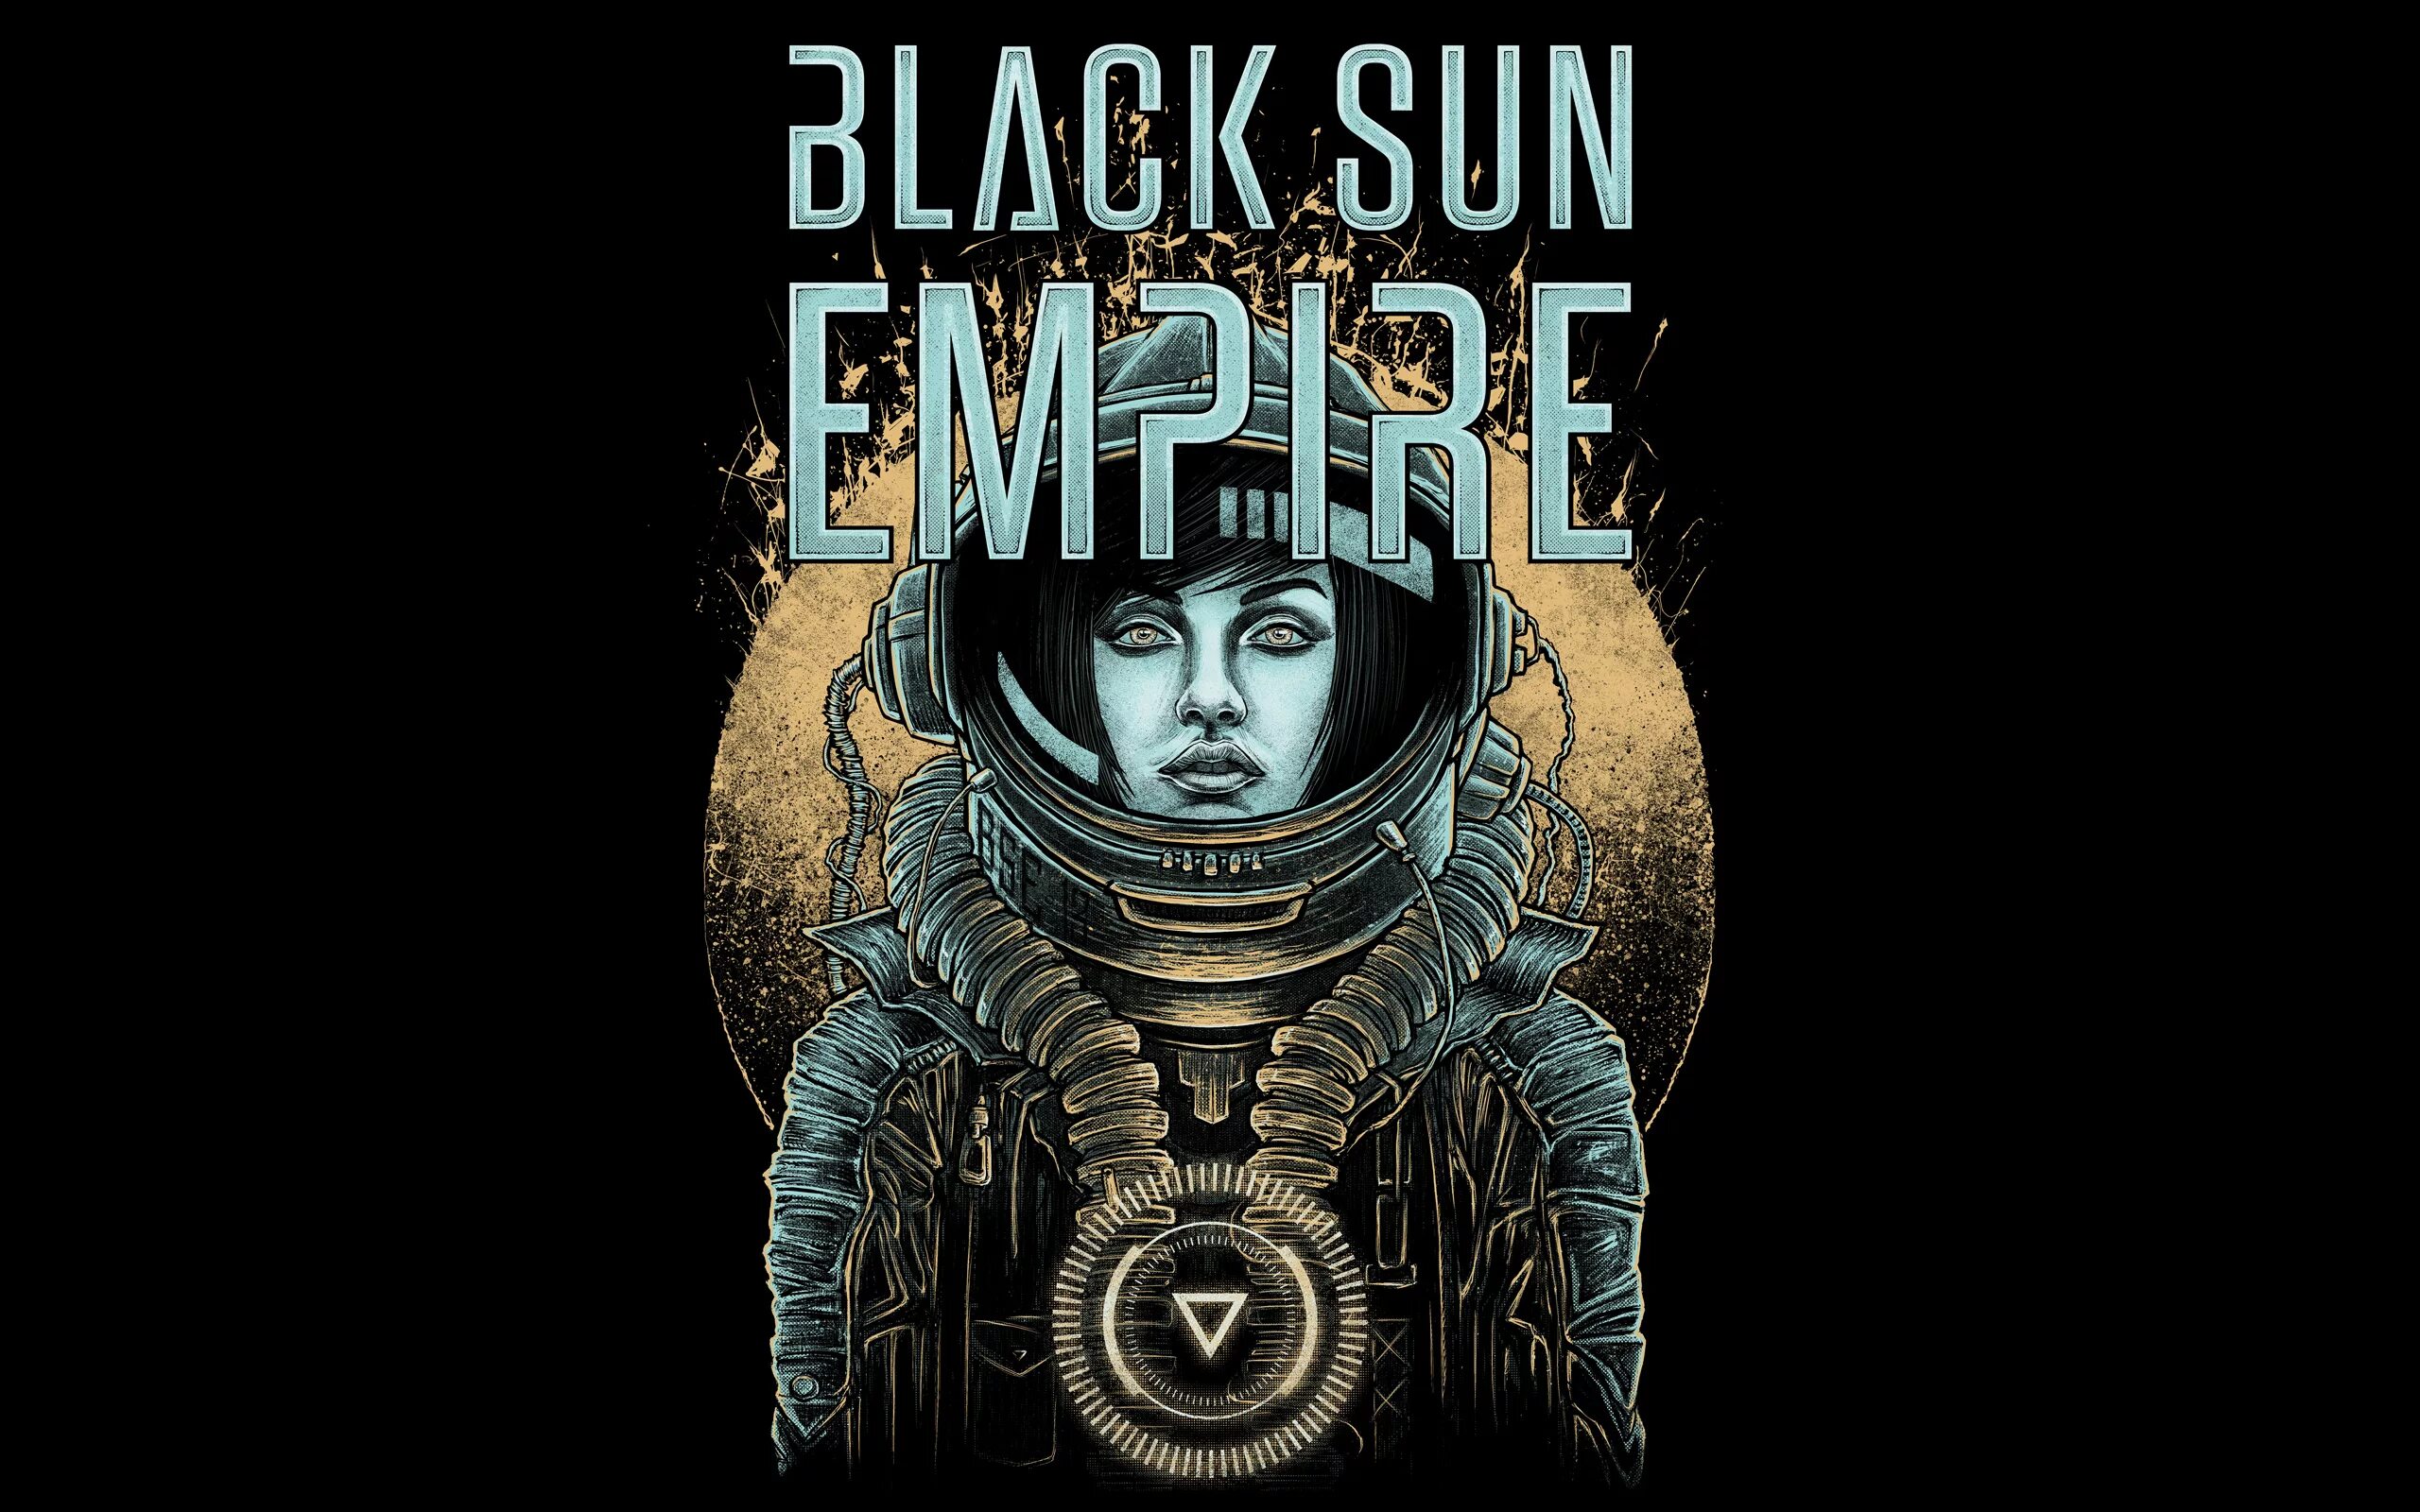 Black san. Группа Black Sun Empire. Neurofunk картинки. Neuropunk обои. Картинки Black Sun Empire.